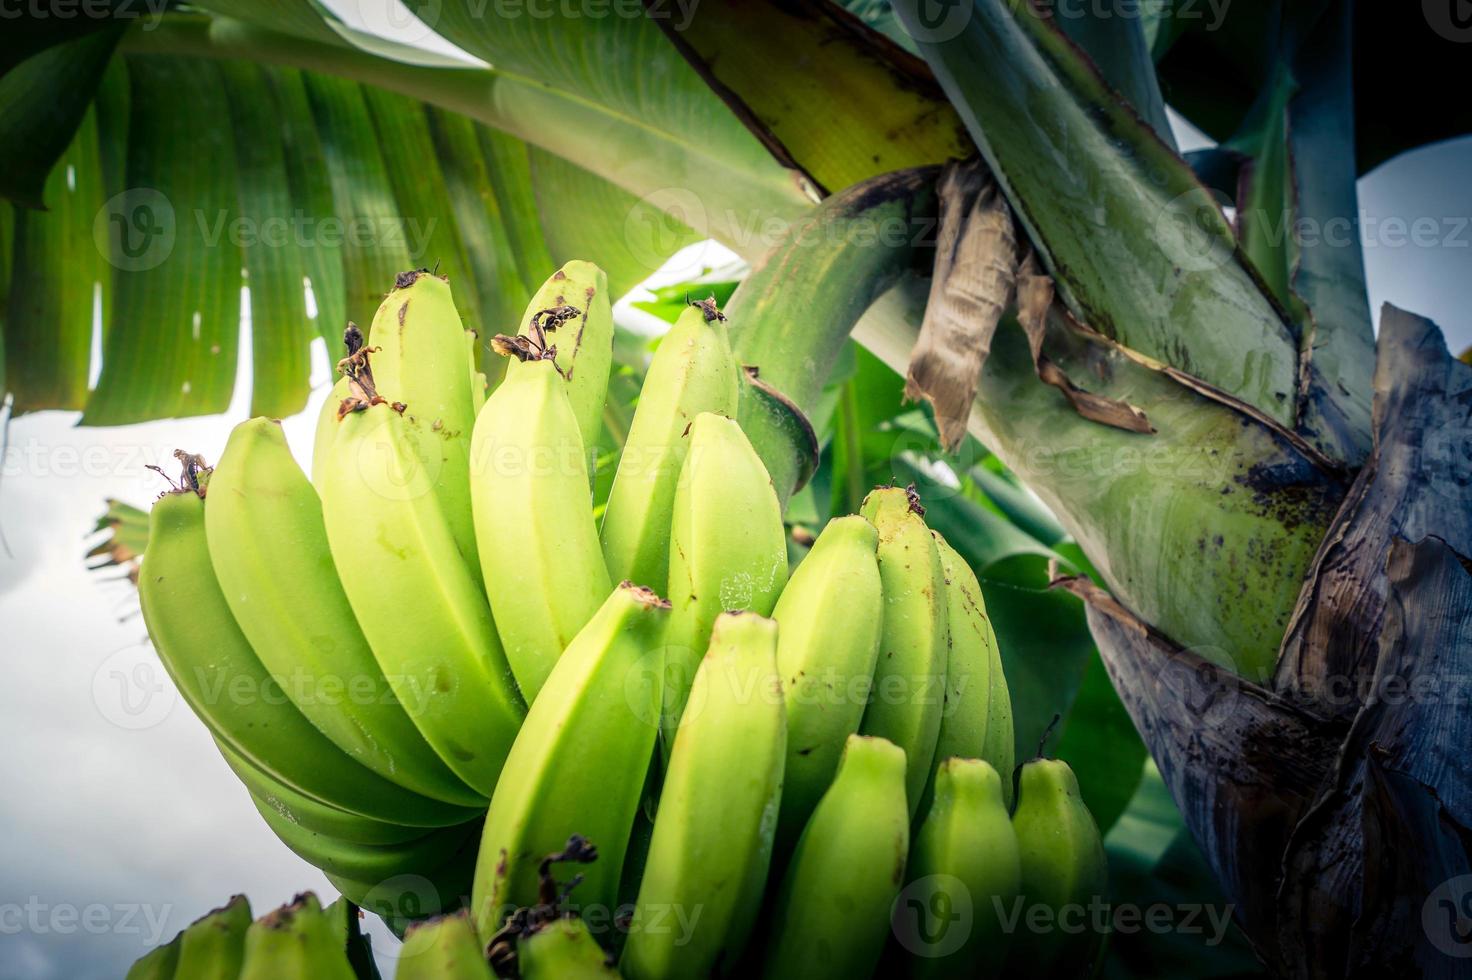 bananes sur une plantation sur l'île de Madère photo